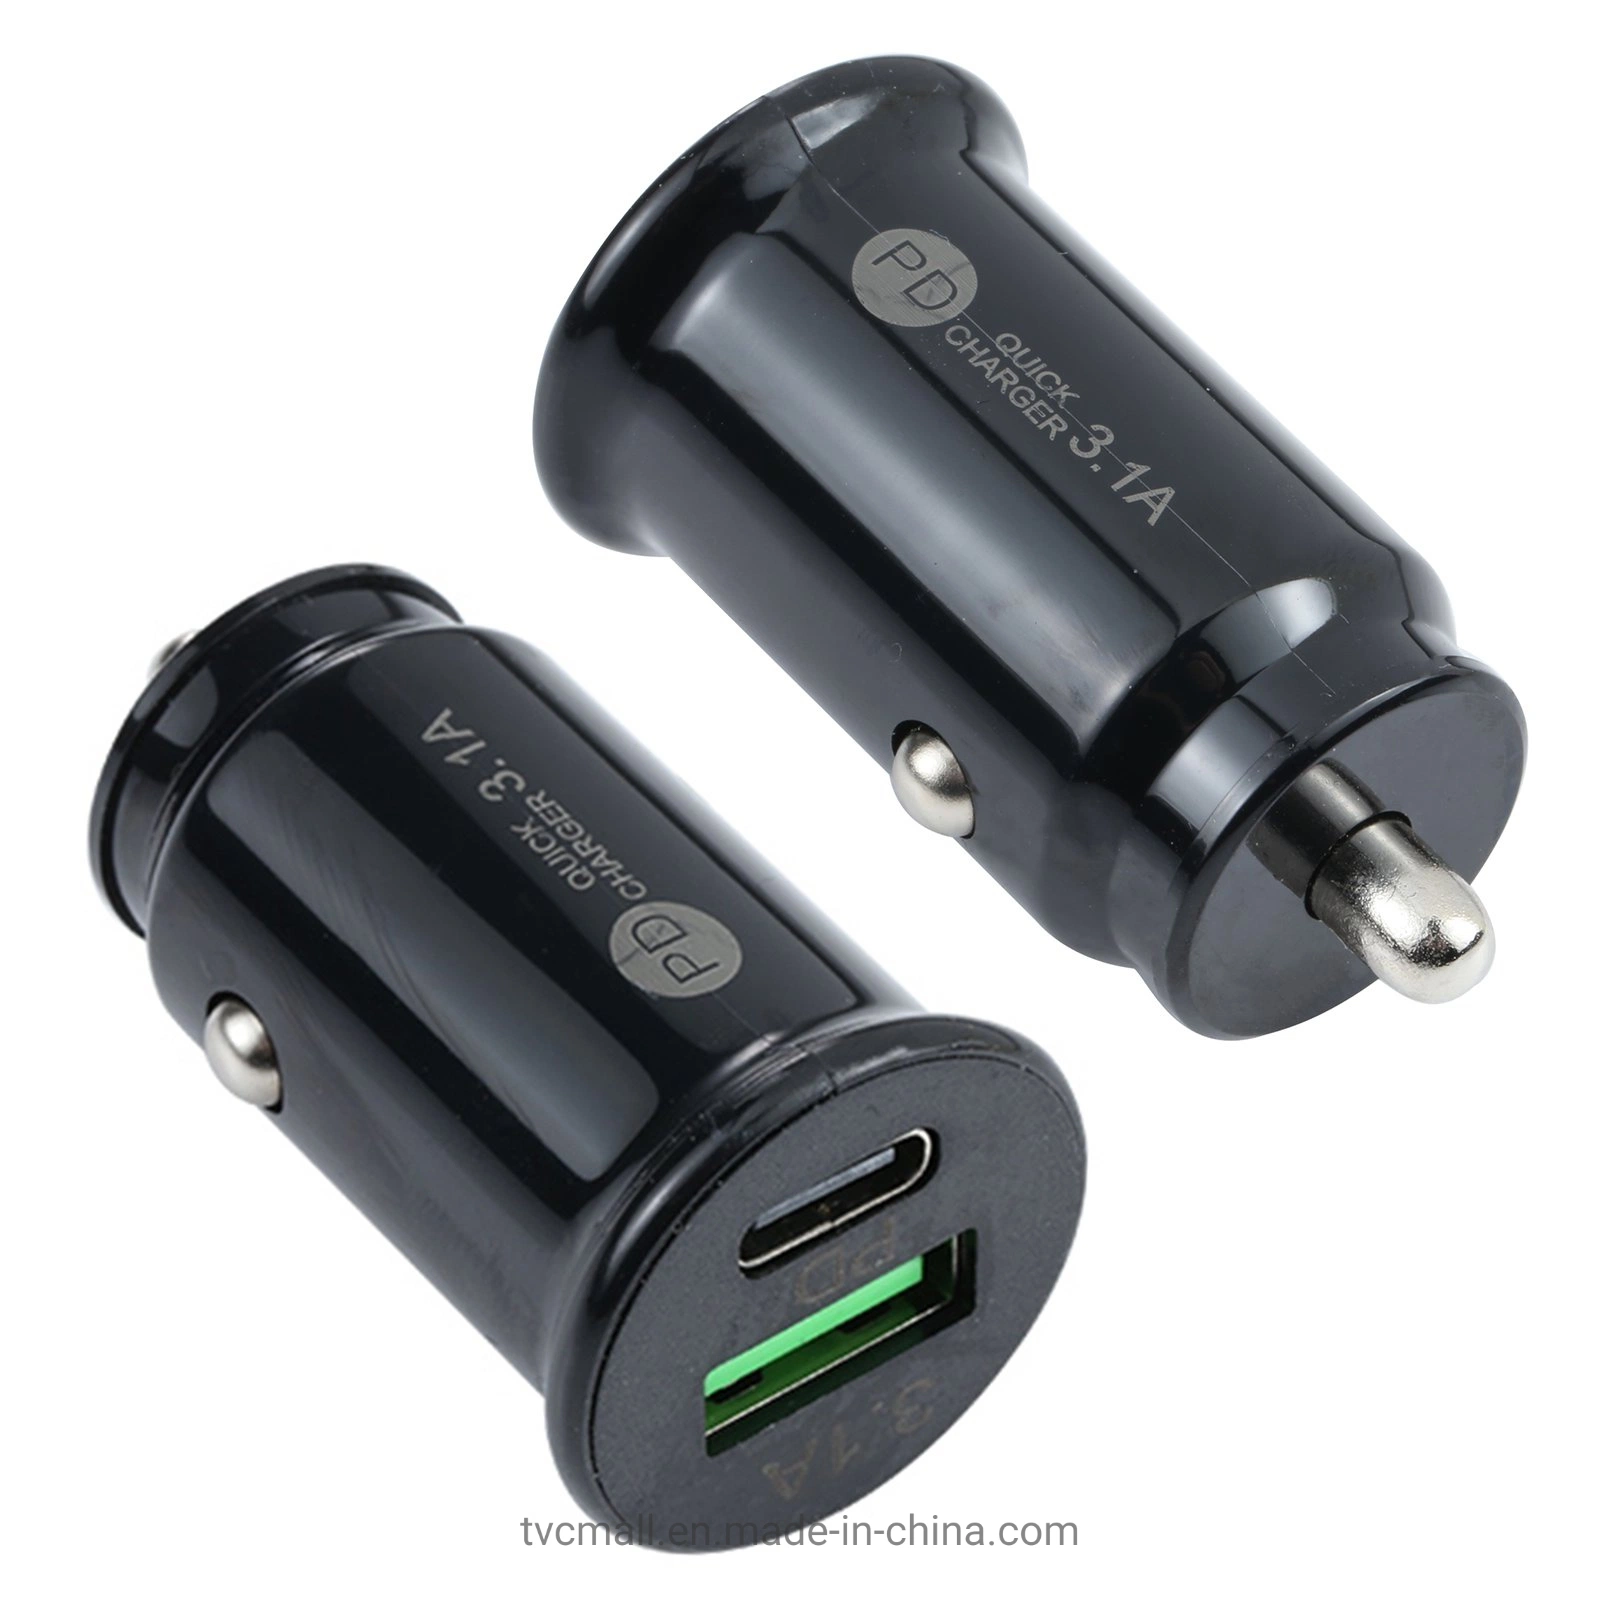 Te-339pd 5V/3.1A ПК C + 3.1A типа Mini USB автомобильное зарядное устройство с двумя портами прикуриватель Быстрая зарядка - черный